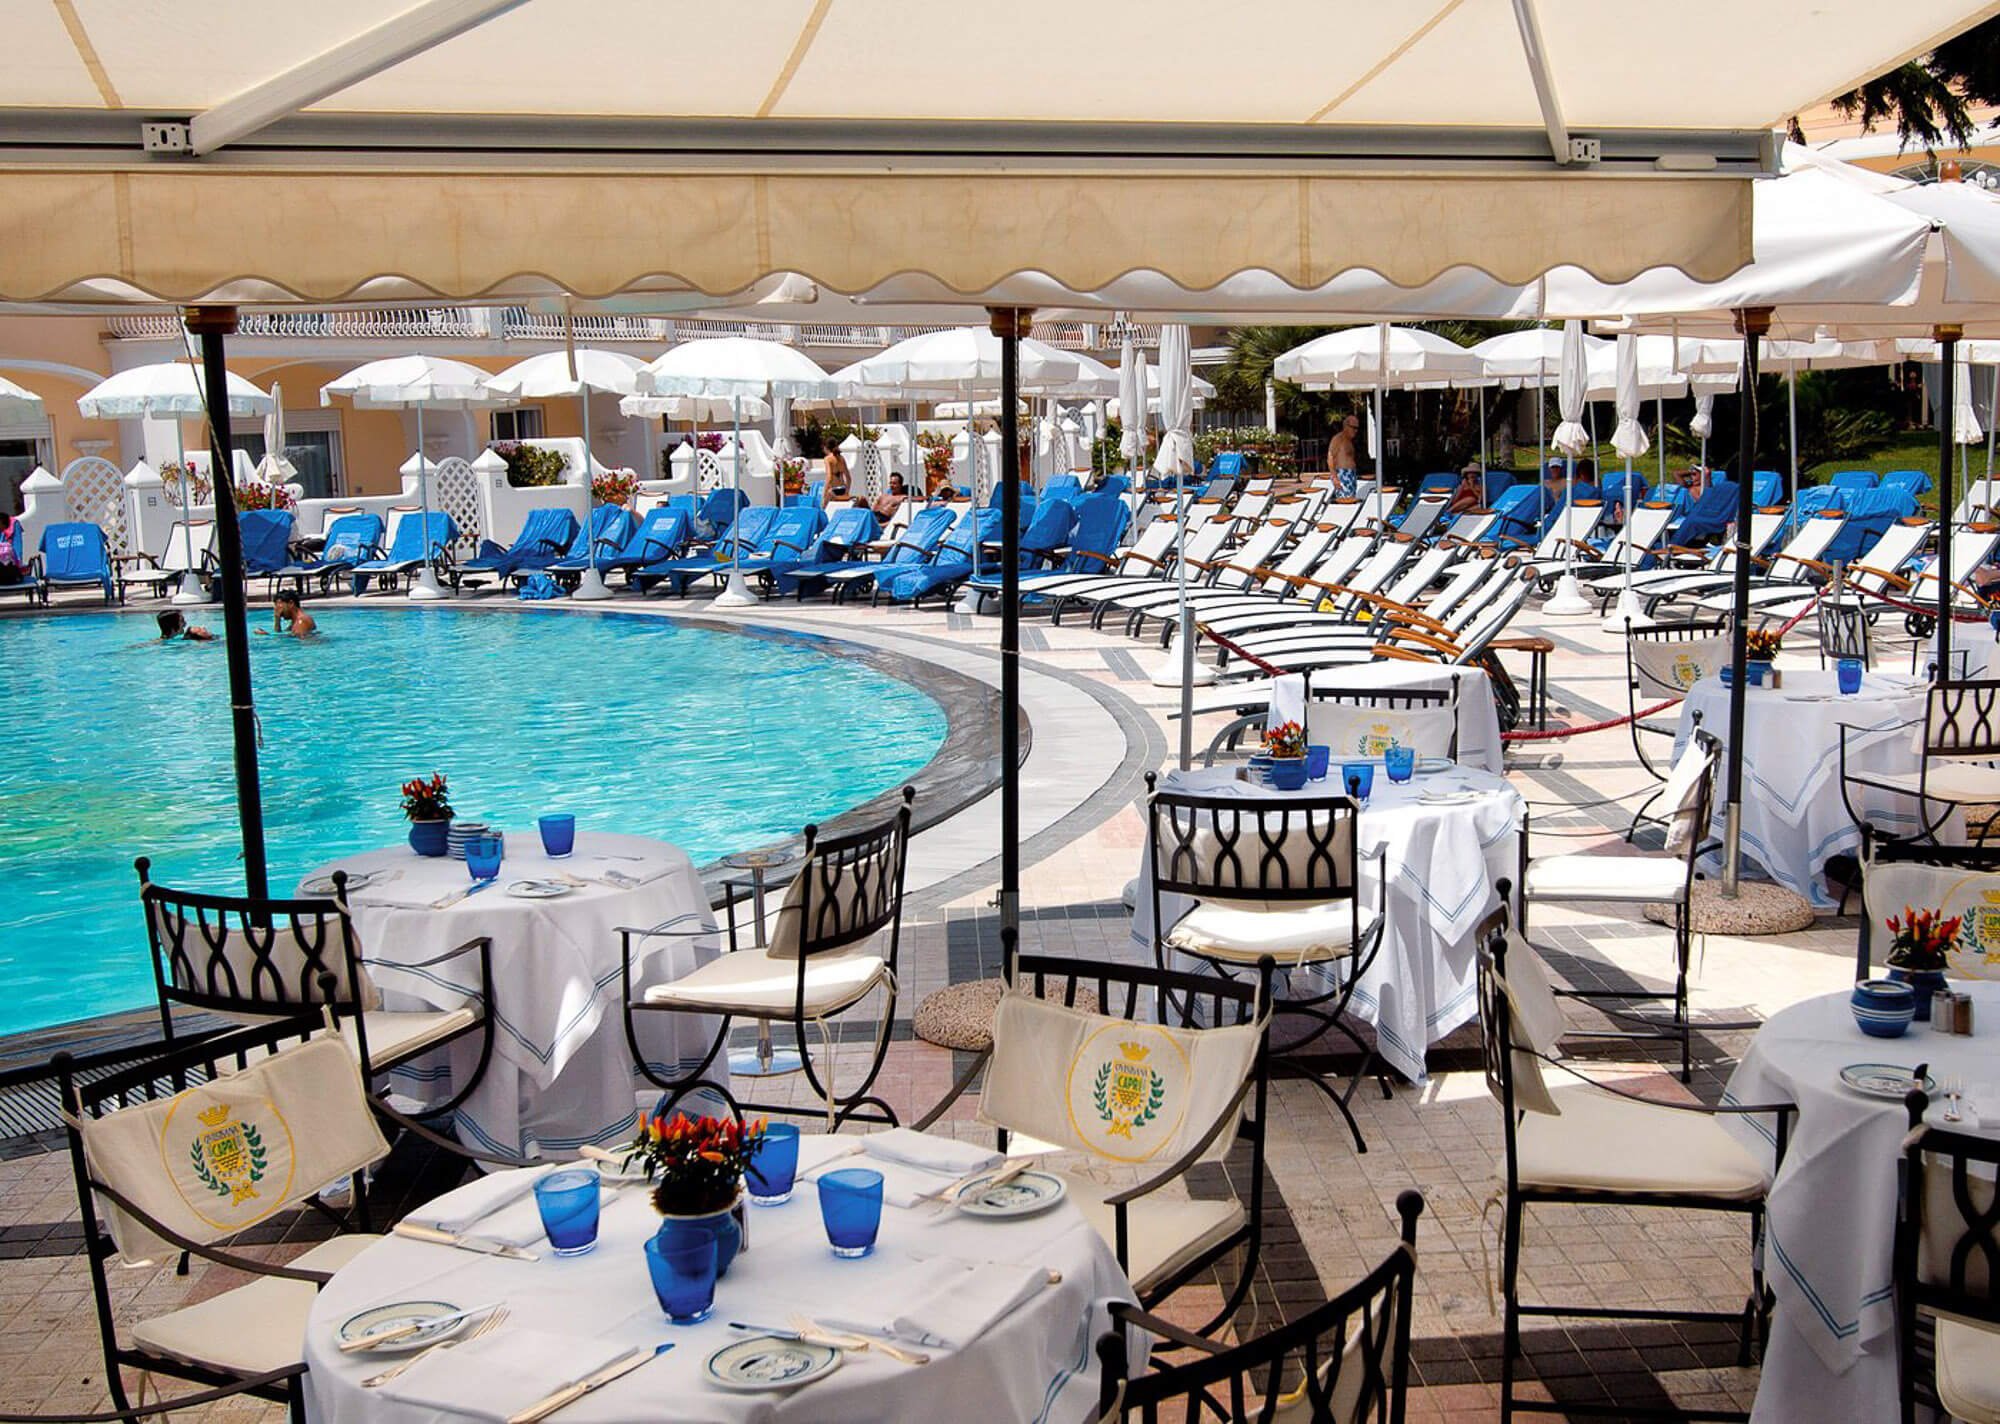 Poolside dining in Capri at Grand Hotel Quisisana